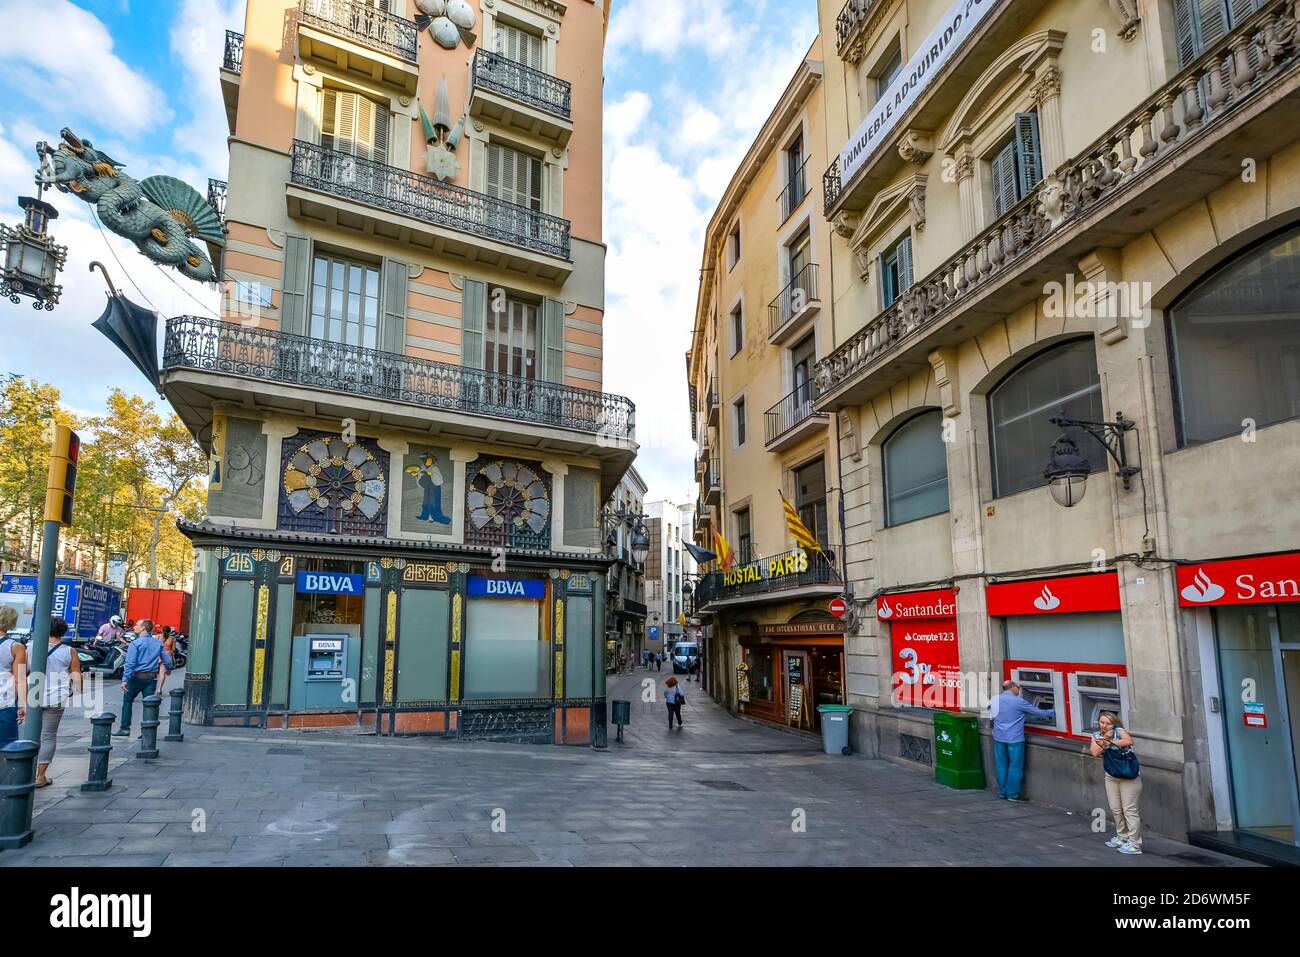 Une ruelle étroite de la Rambla dans le tourisme Centre de Barcelone Espagne Banque D'Images